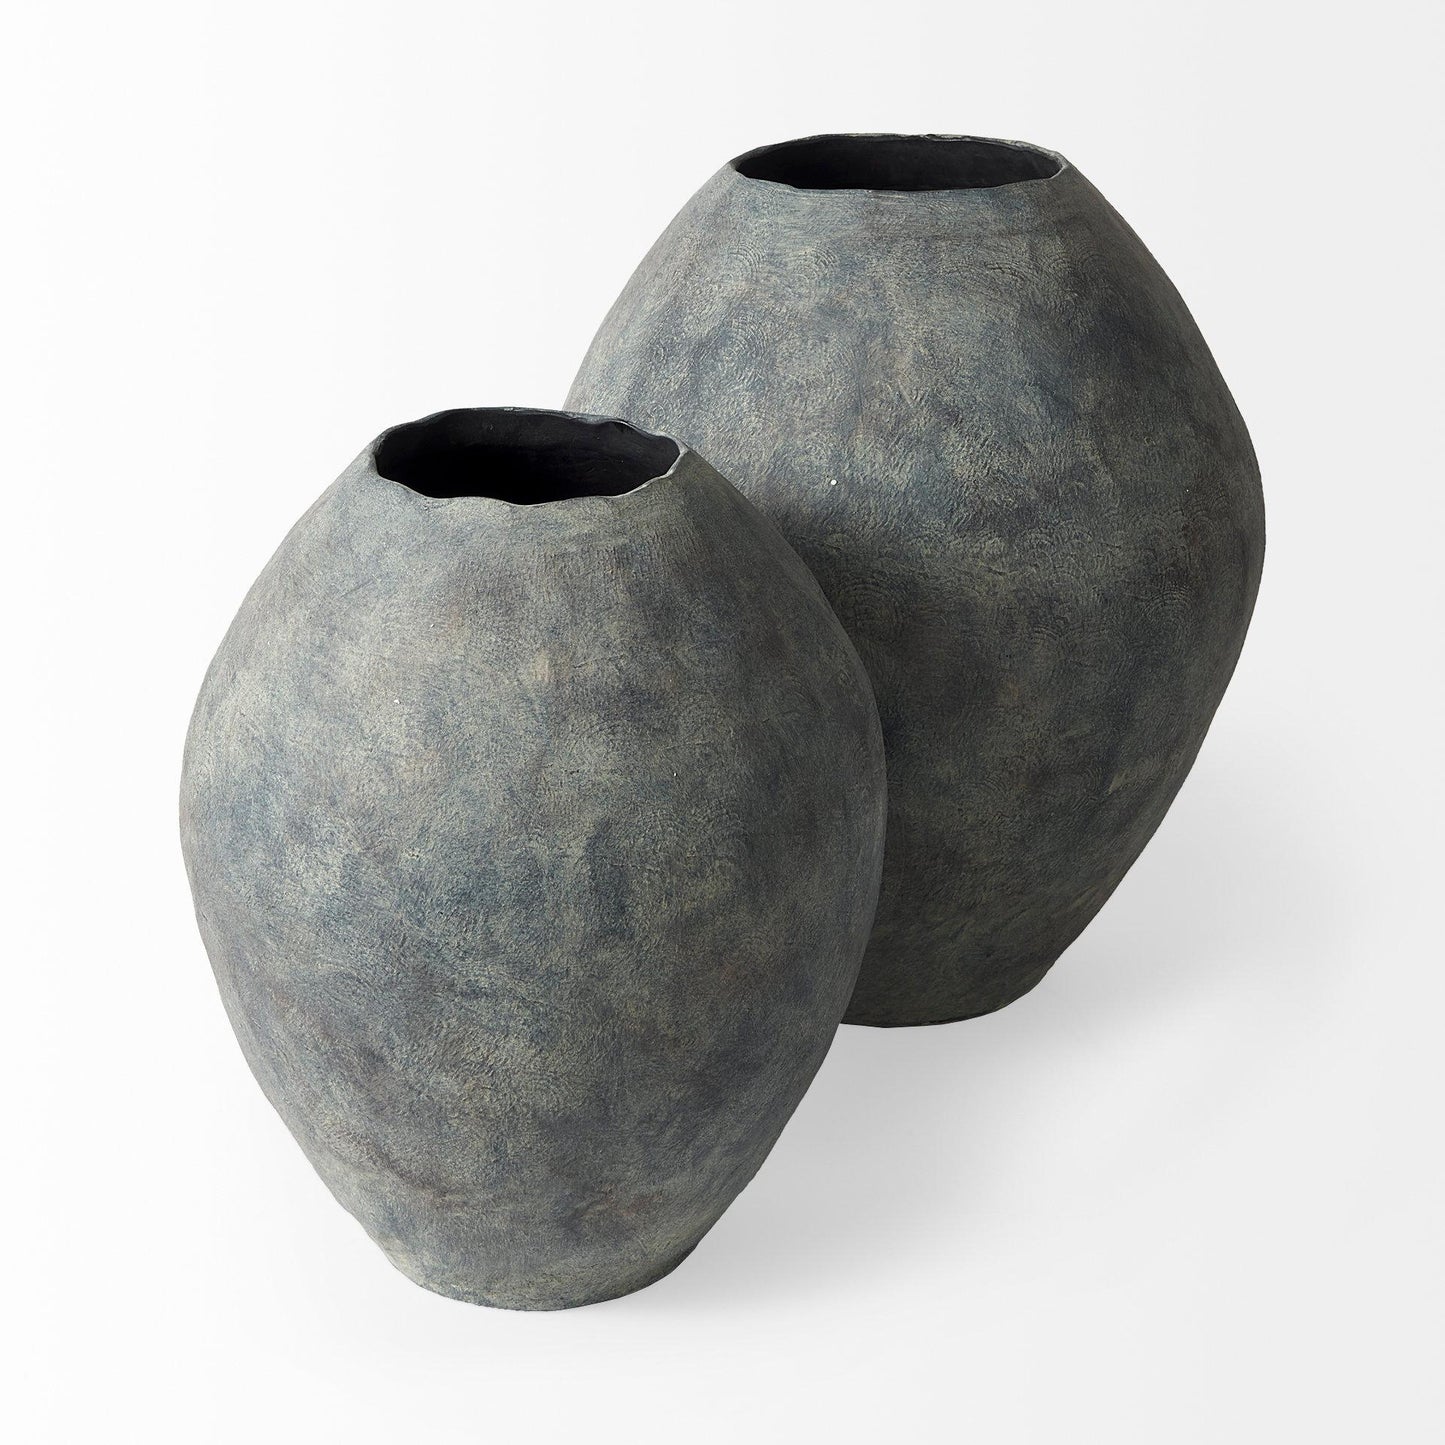 Gobi 23L x 28H Large Gray Ceramic Oval Vase